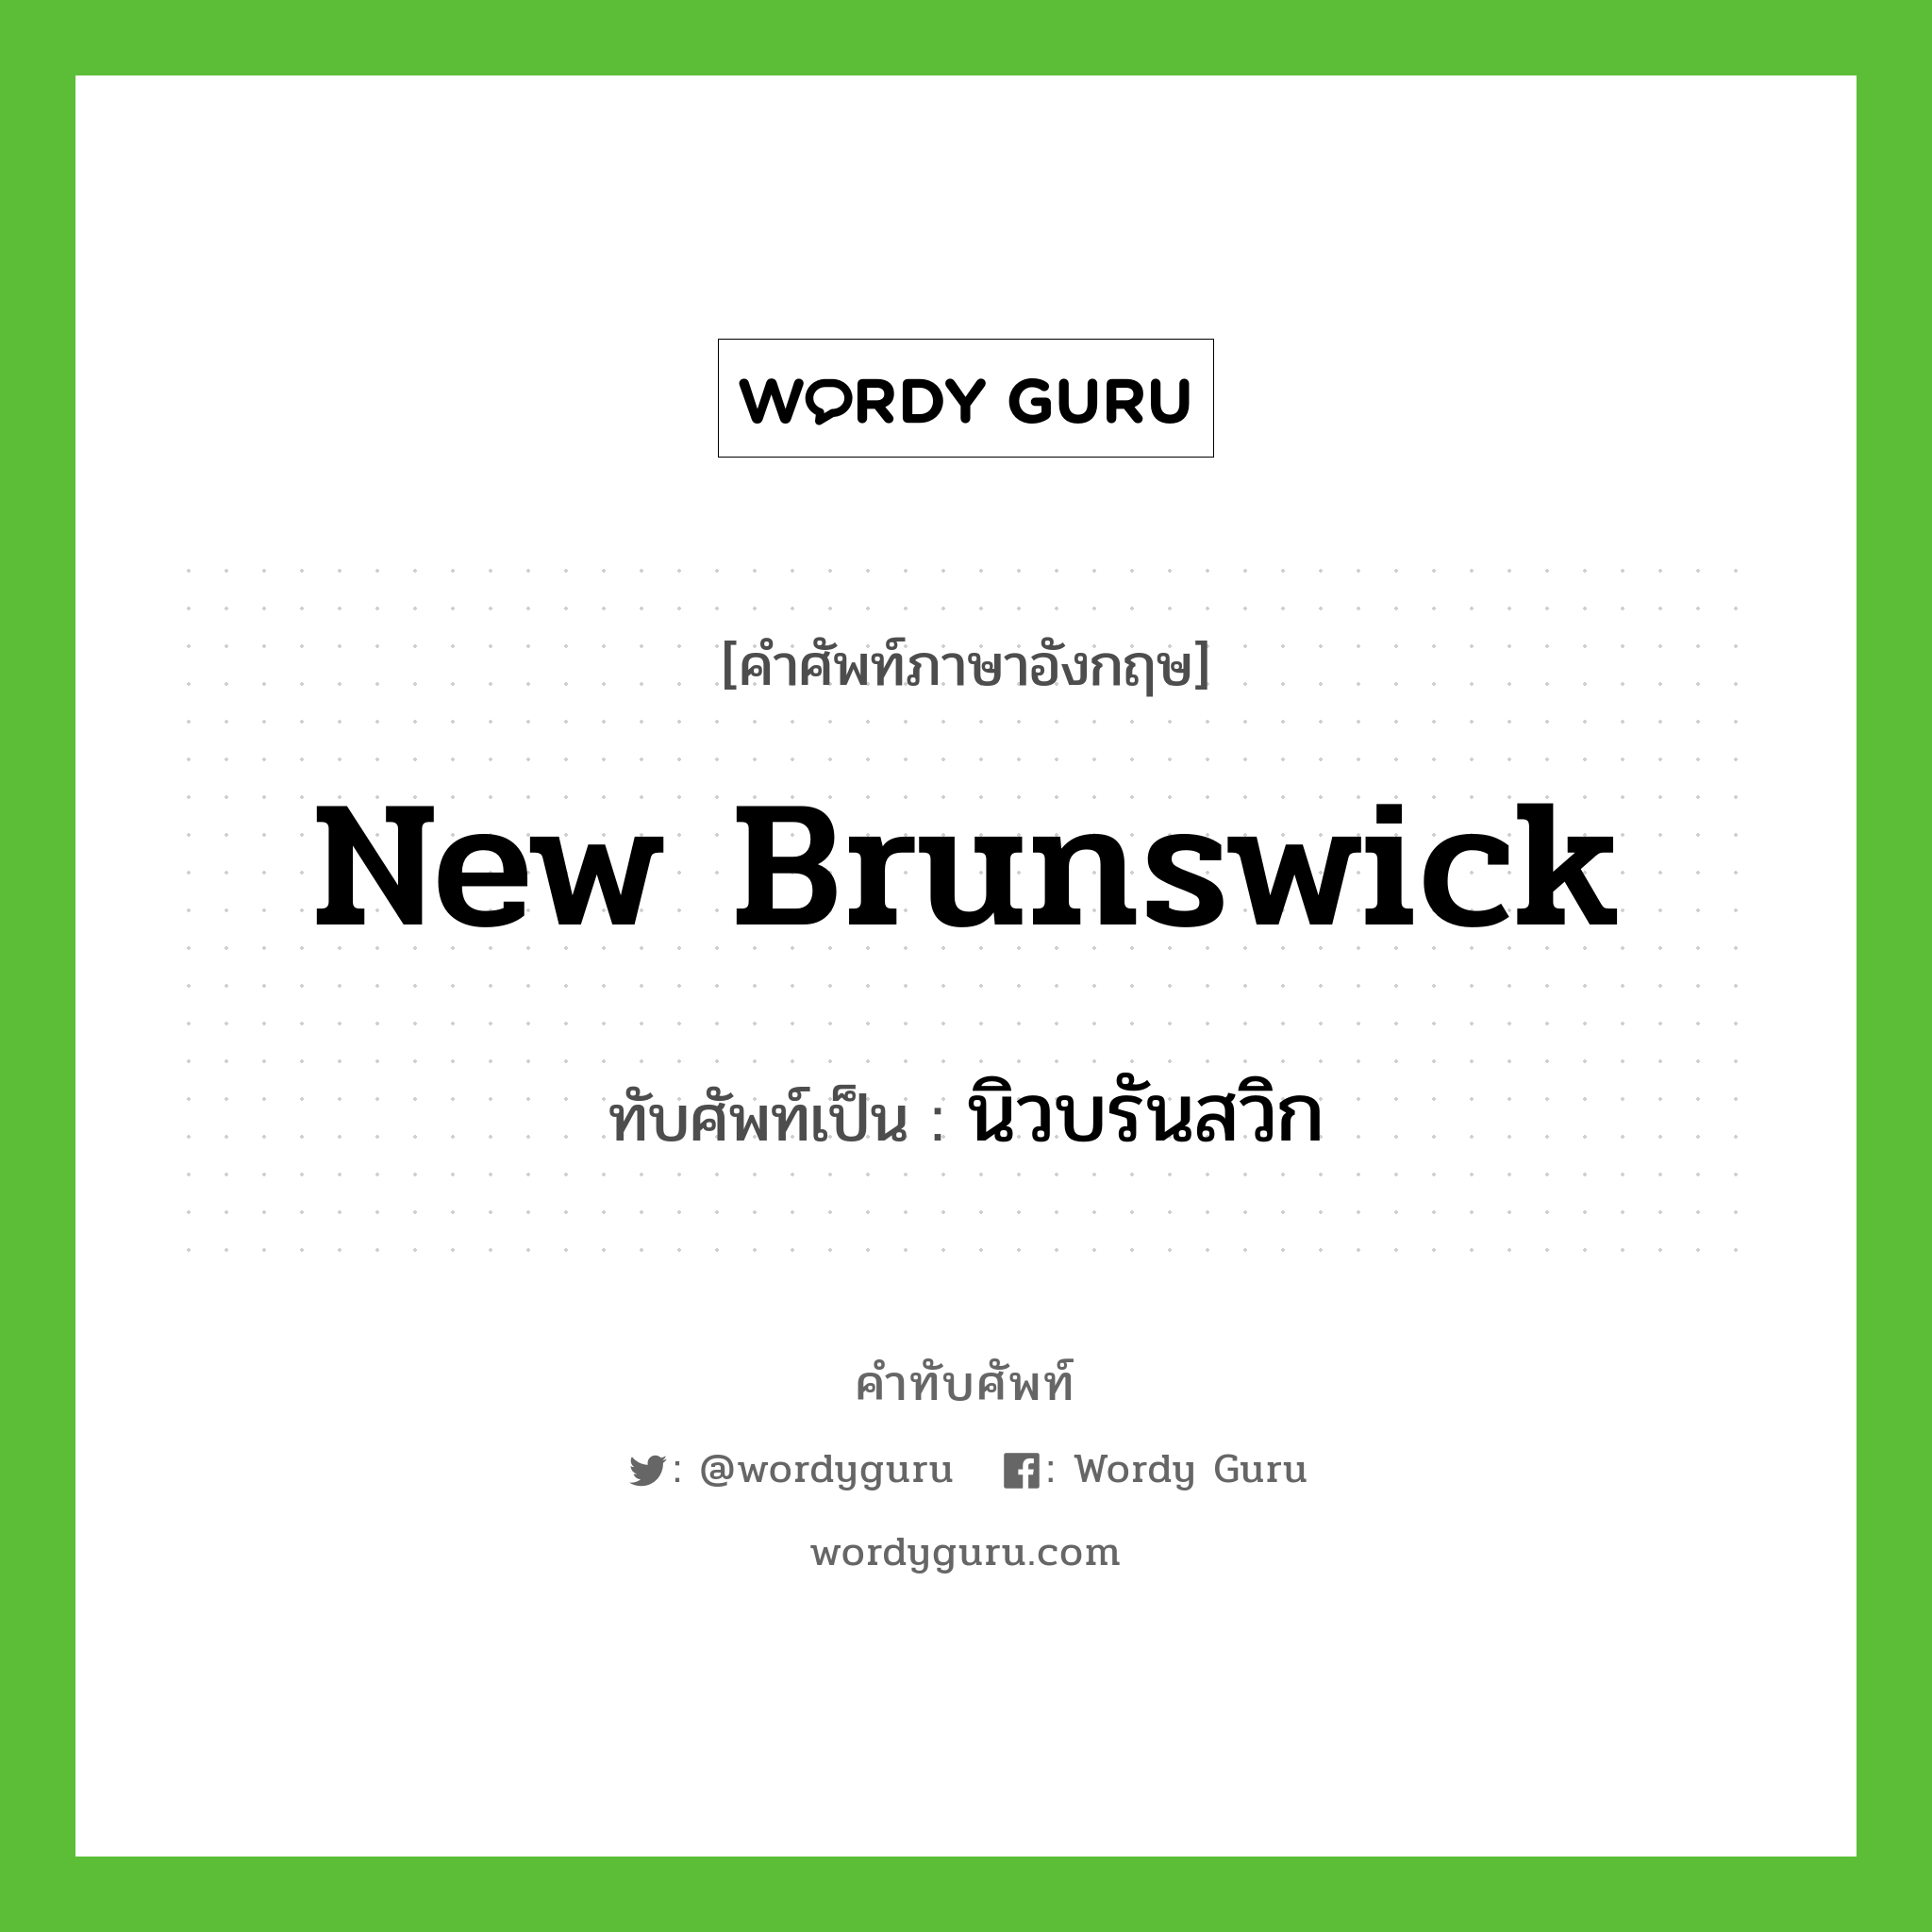 นิวบรันสวิก เขียนอย่างไร?, คำศัพท์ภาษาอังกฤษ นิวบรันสวิก ทับศัพท์เป็น New Brunswick